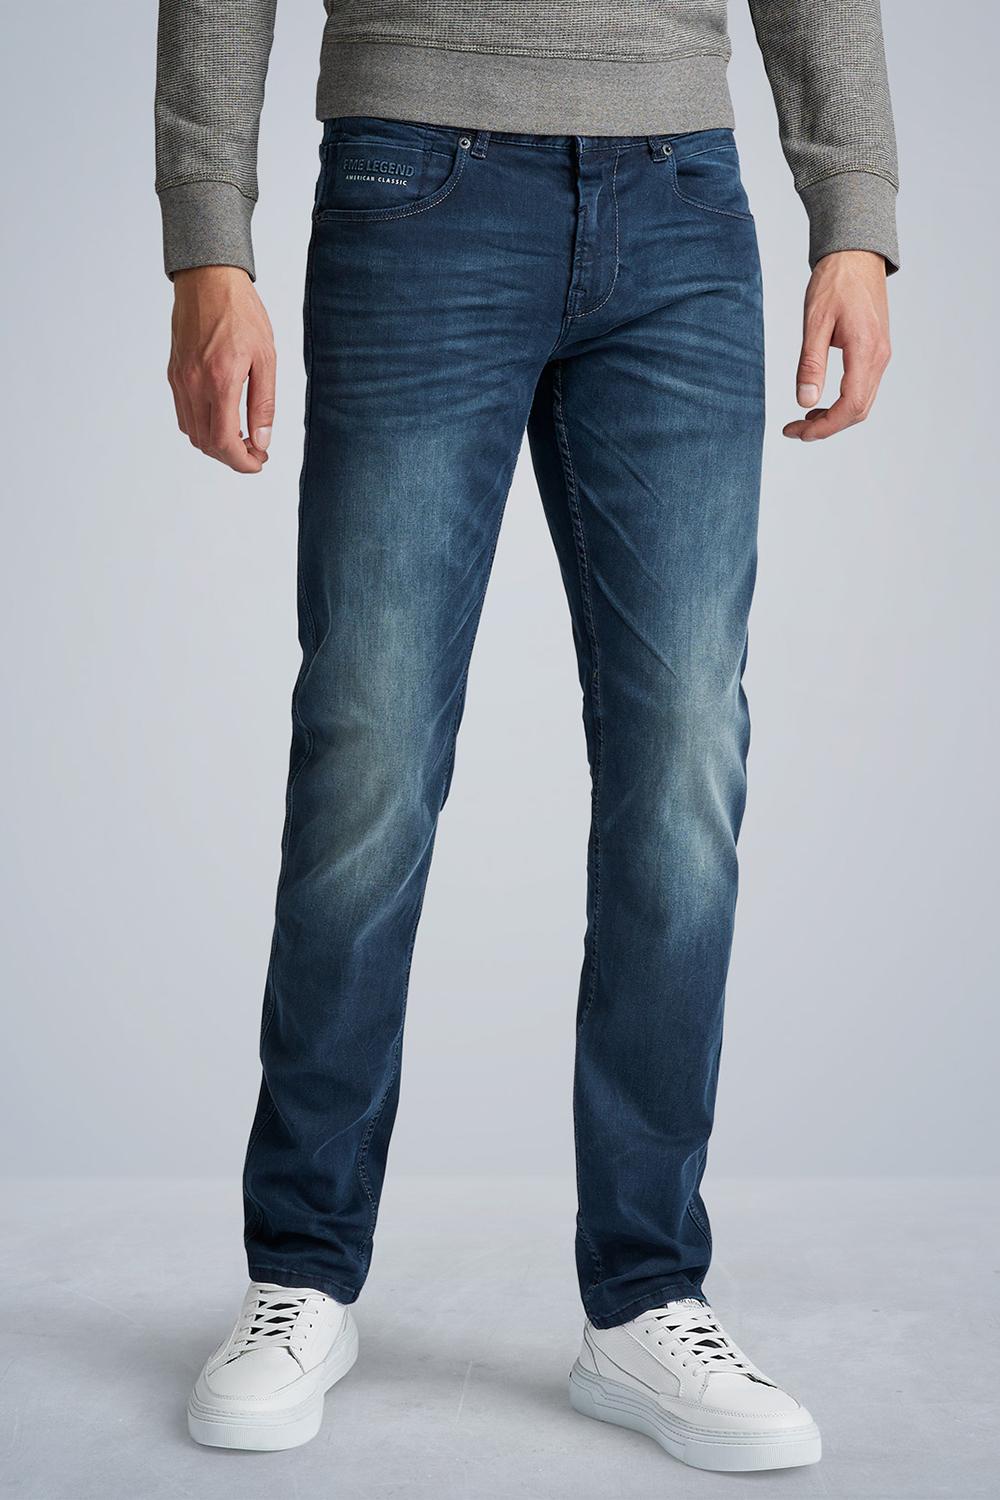 Gearceerd twintig Sluimeren nightflight ptr120 pme legend jeans lmb